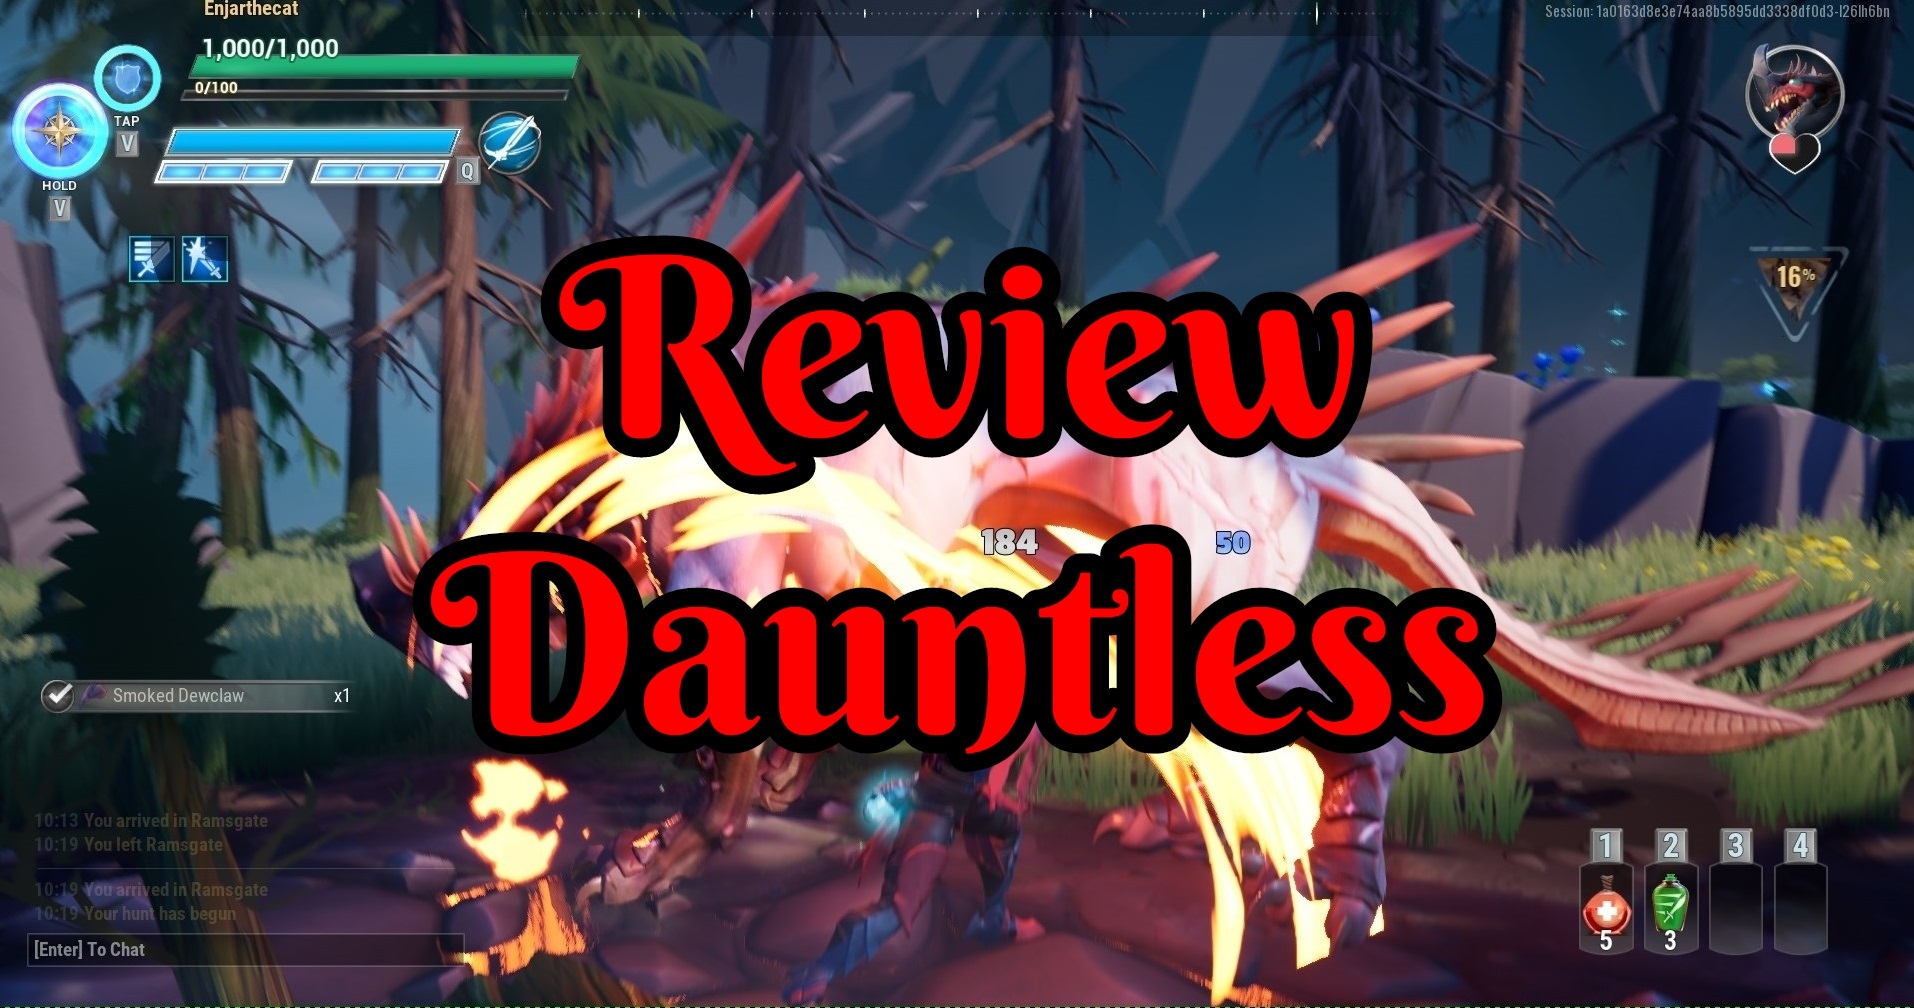 Dauntless game review arpg.jpg